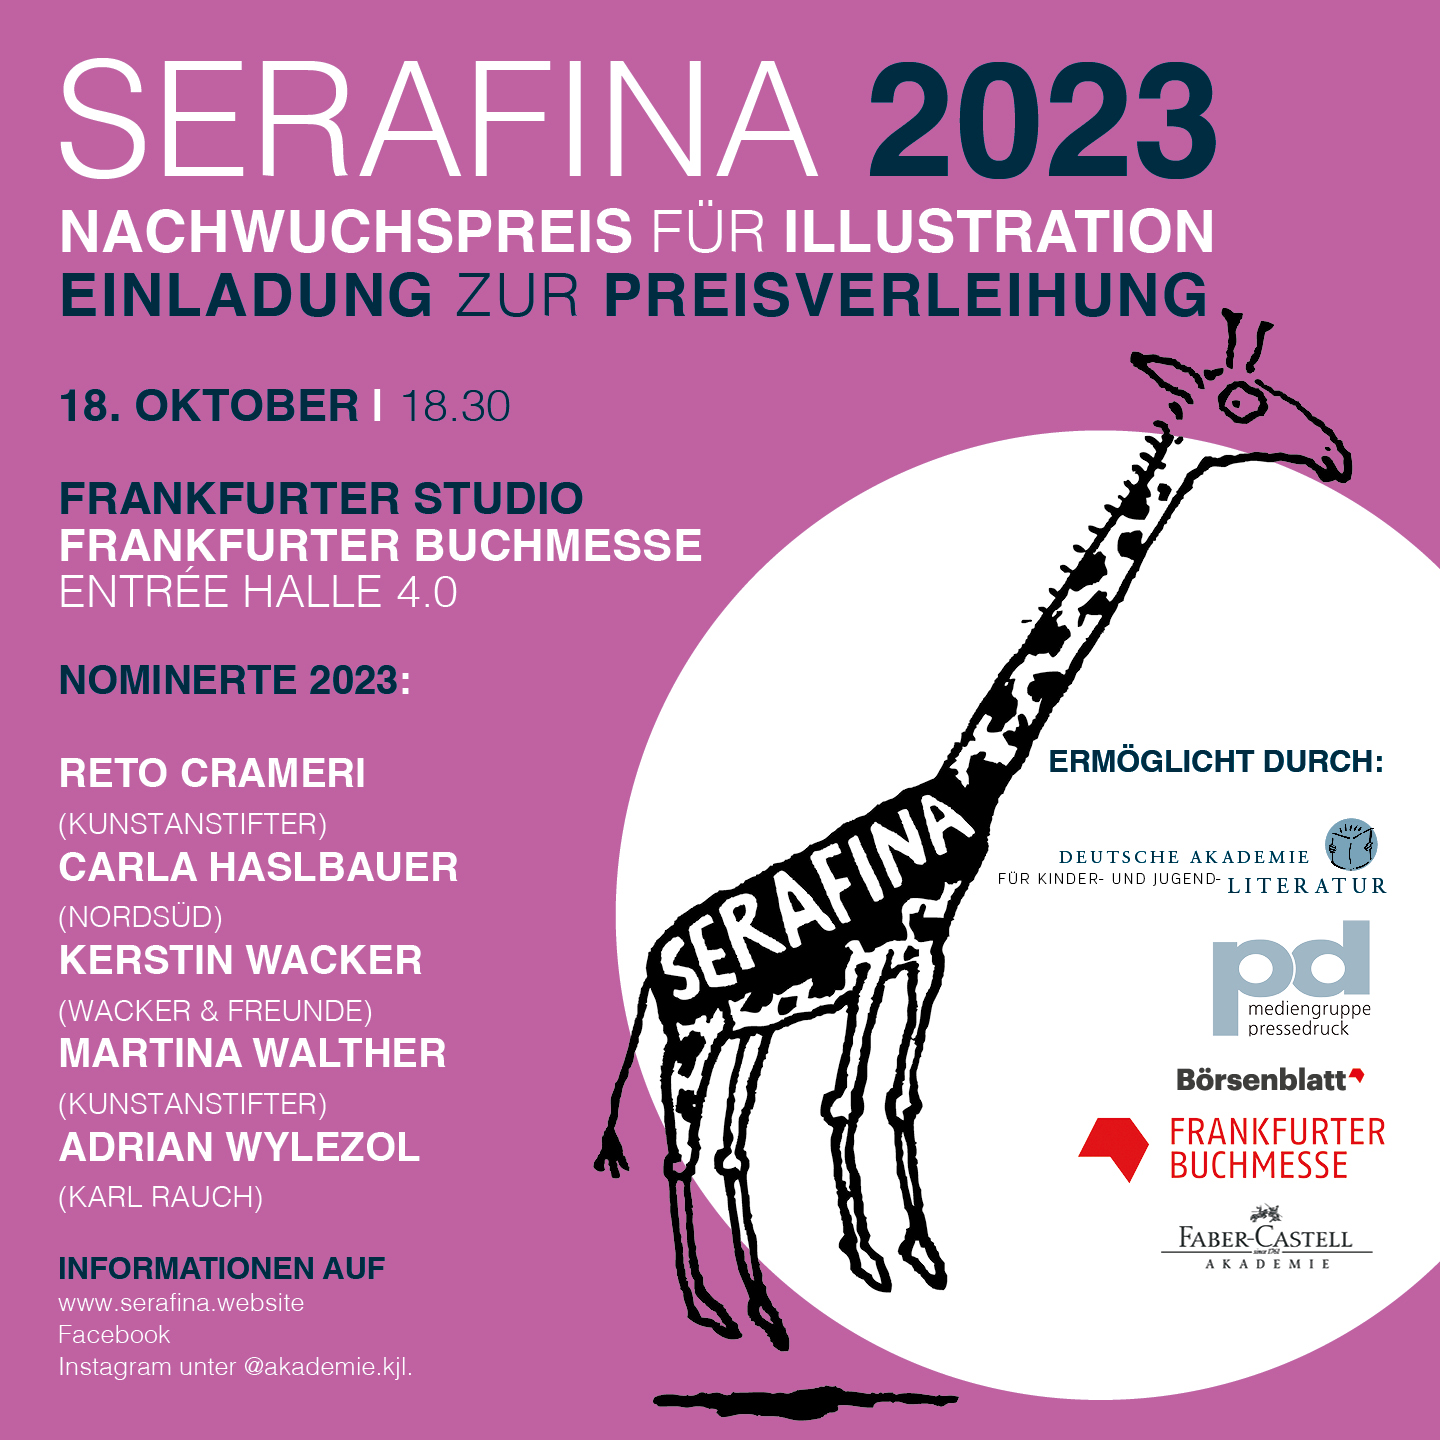 Serafina 2023 - Einladung